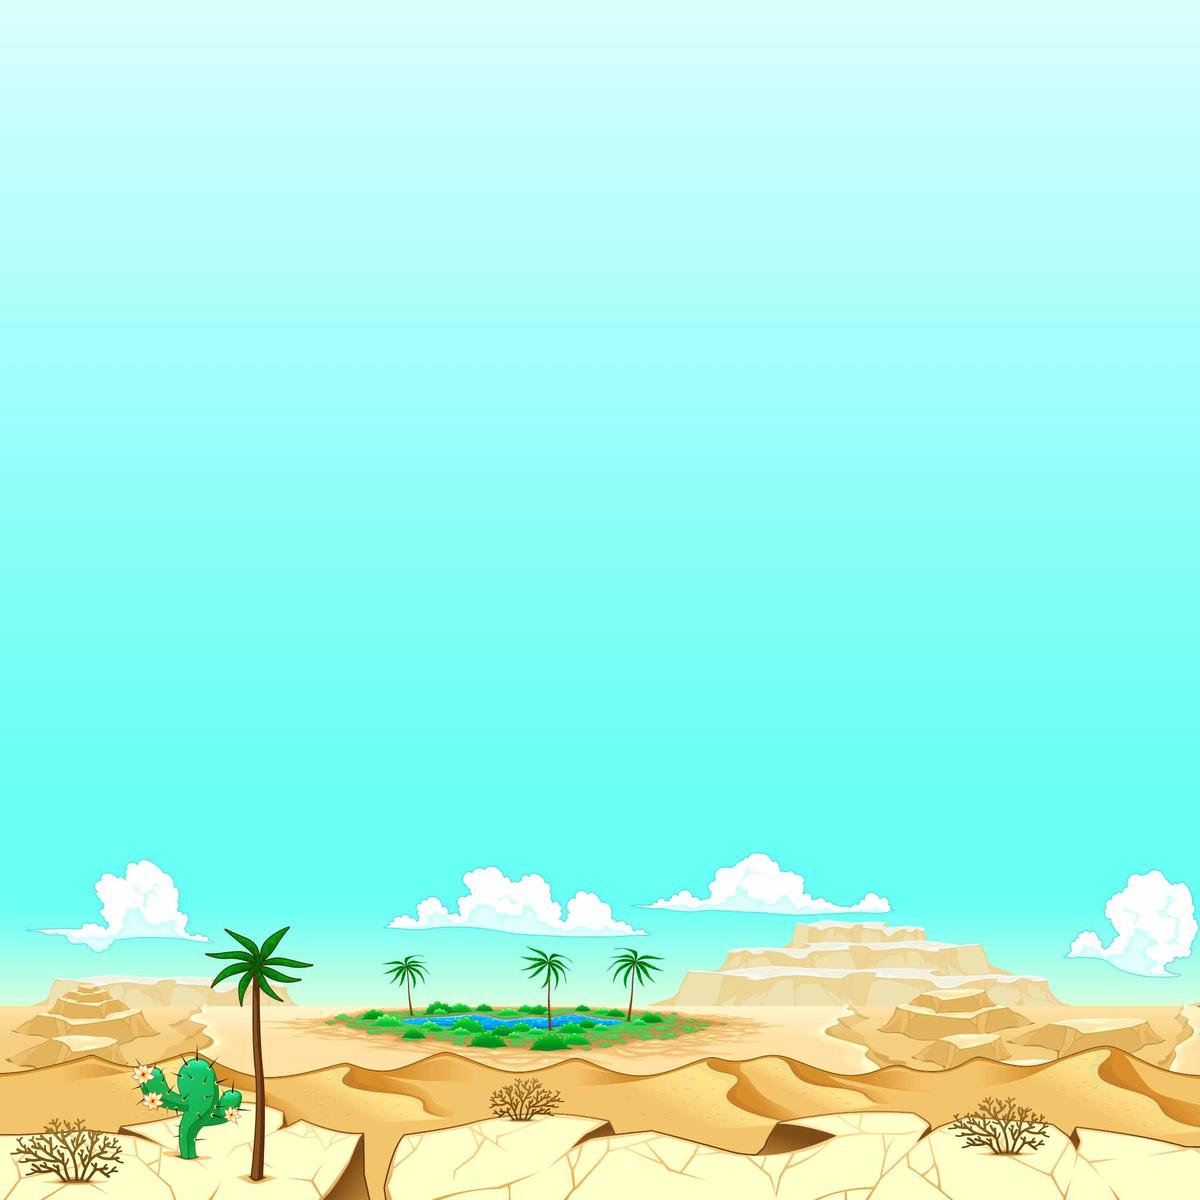 desert game